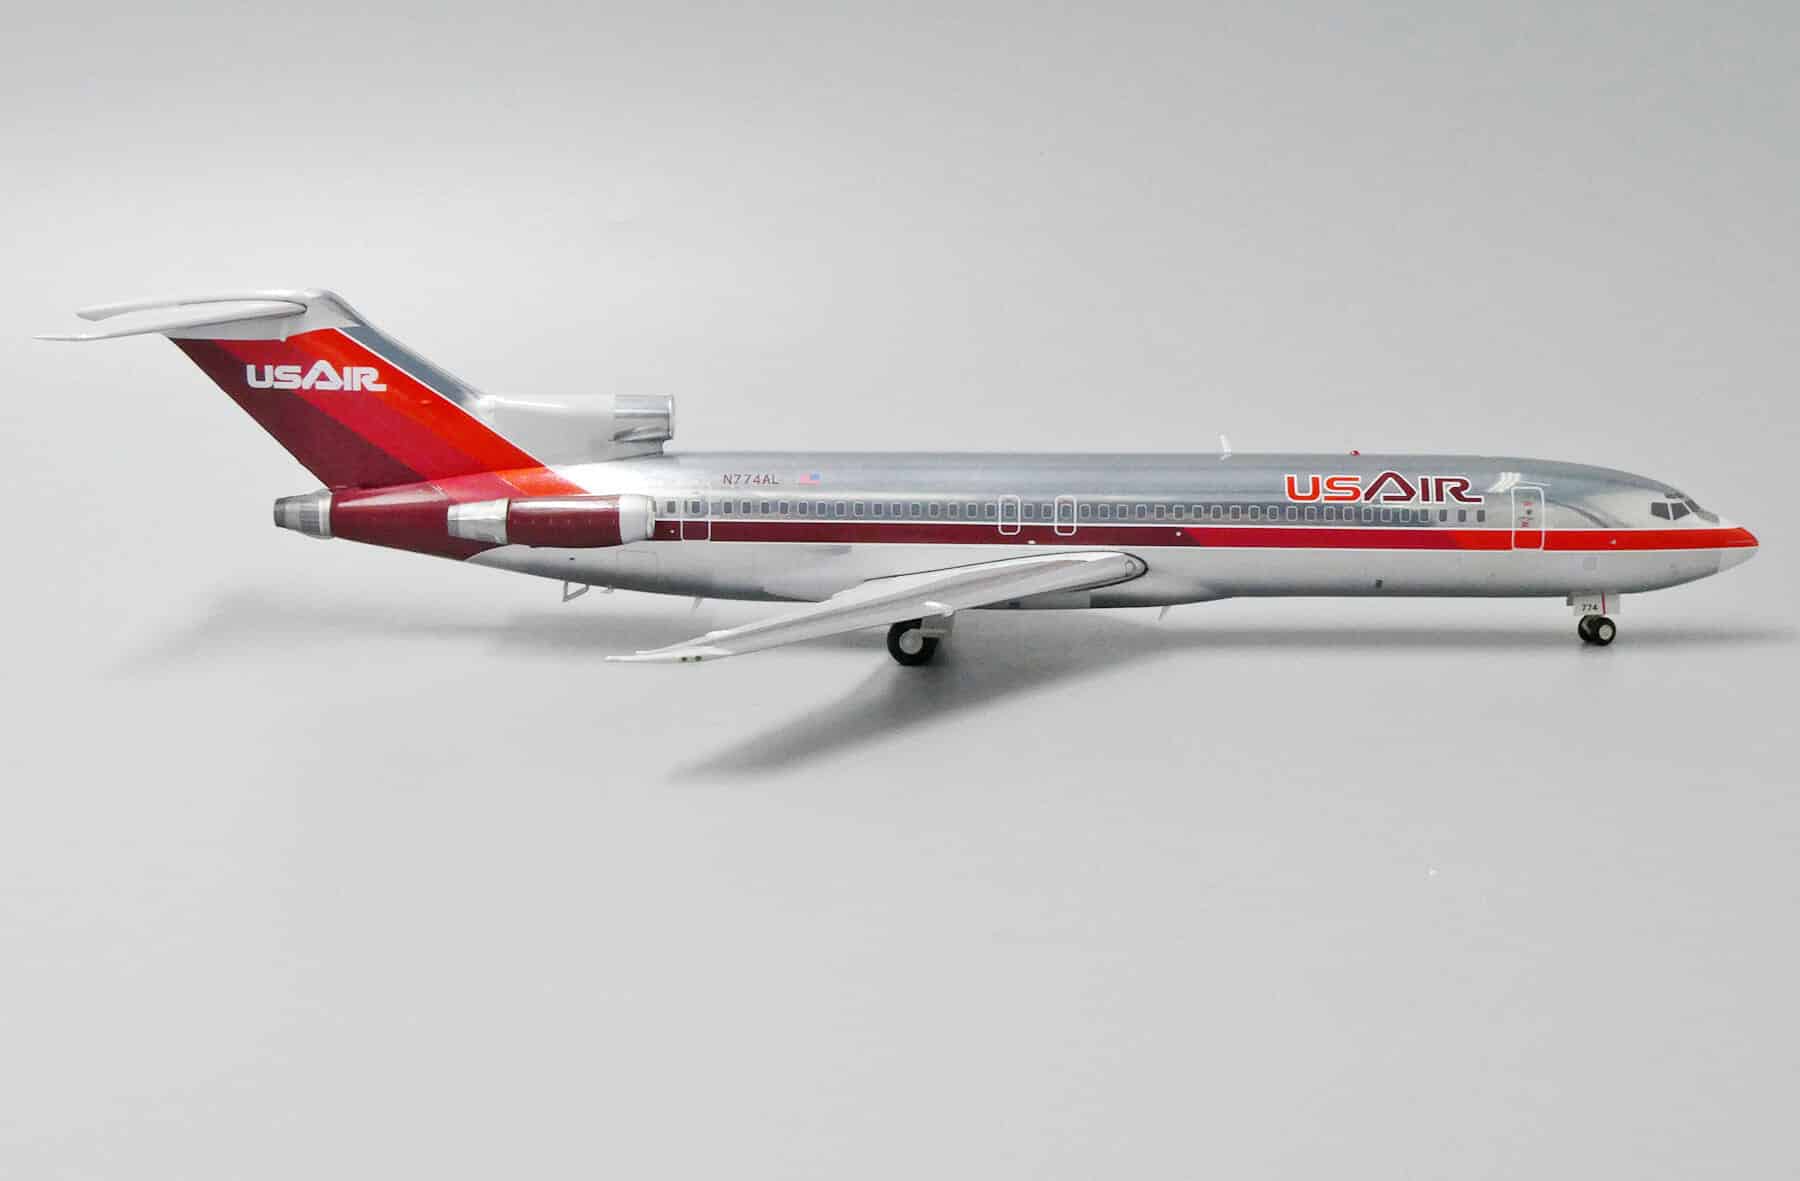 jc wings - 1:200 us air boeing 727-200 n774al (jc2390)